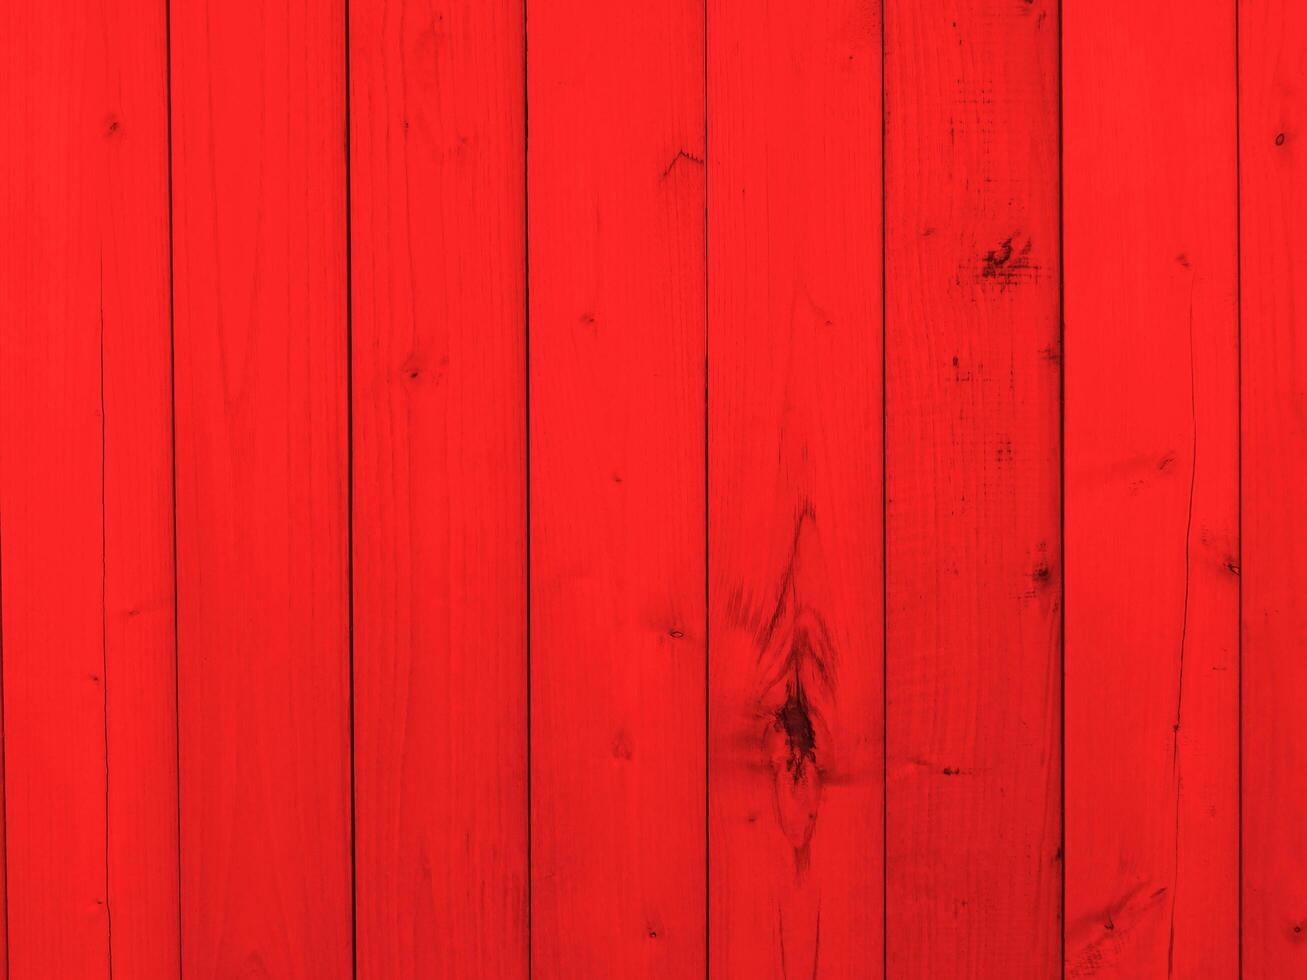 texture bois rouge photo